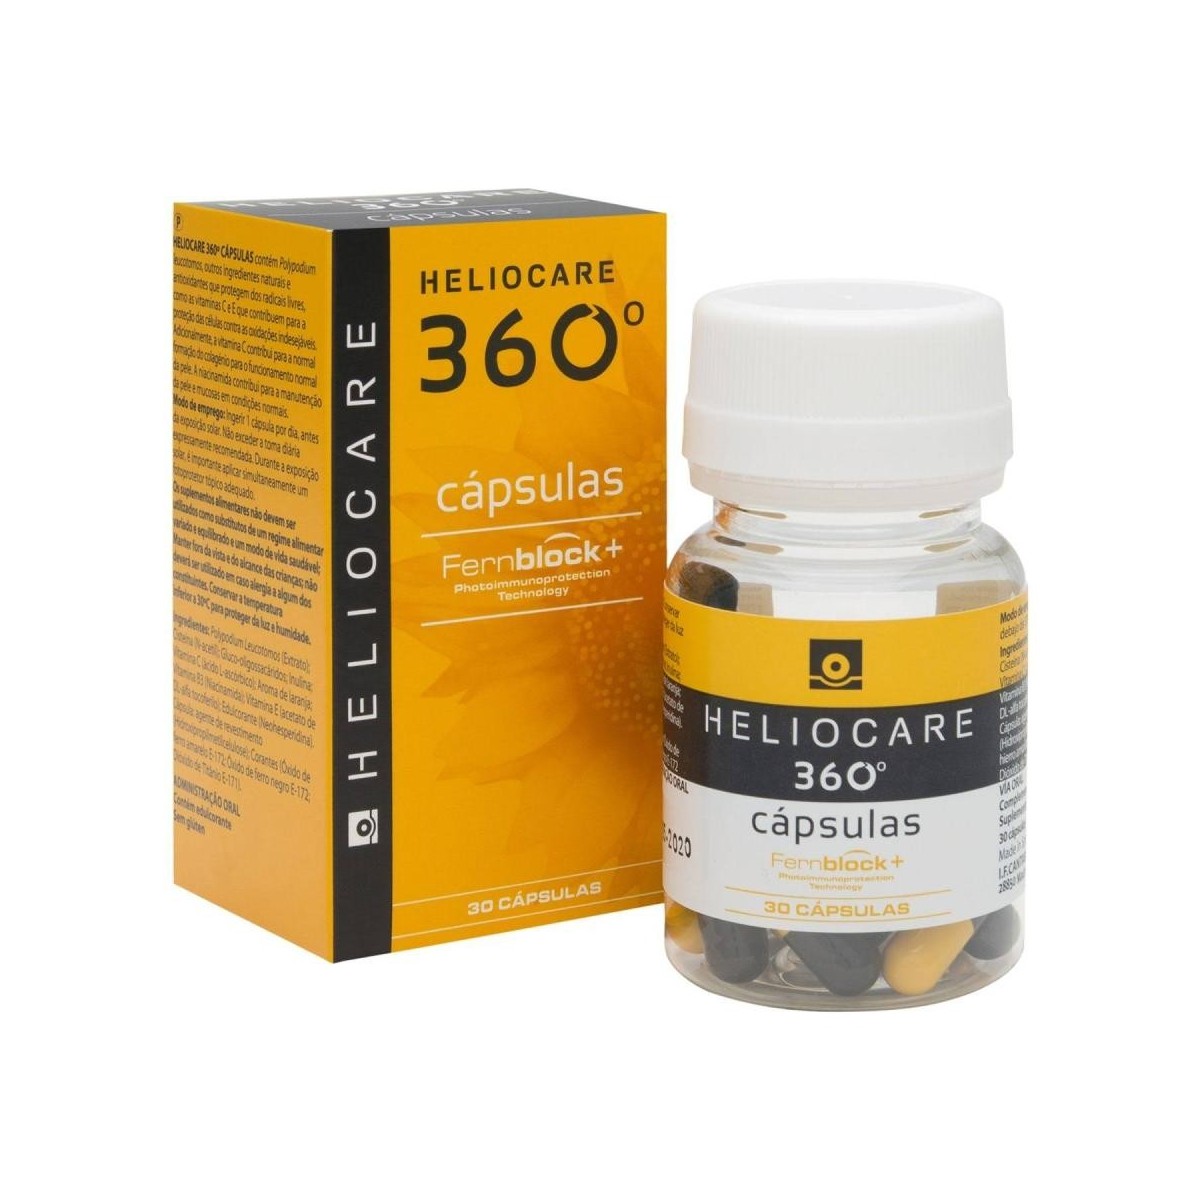 heliocare-360o-30-capsulas